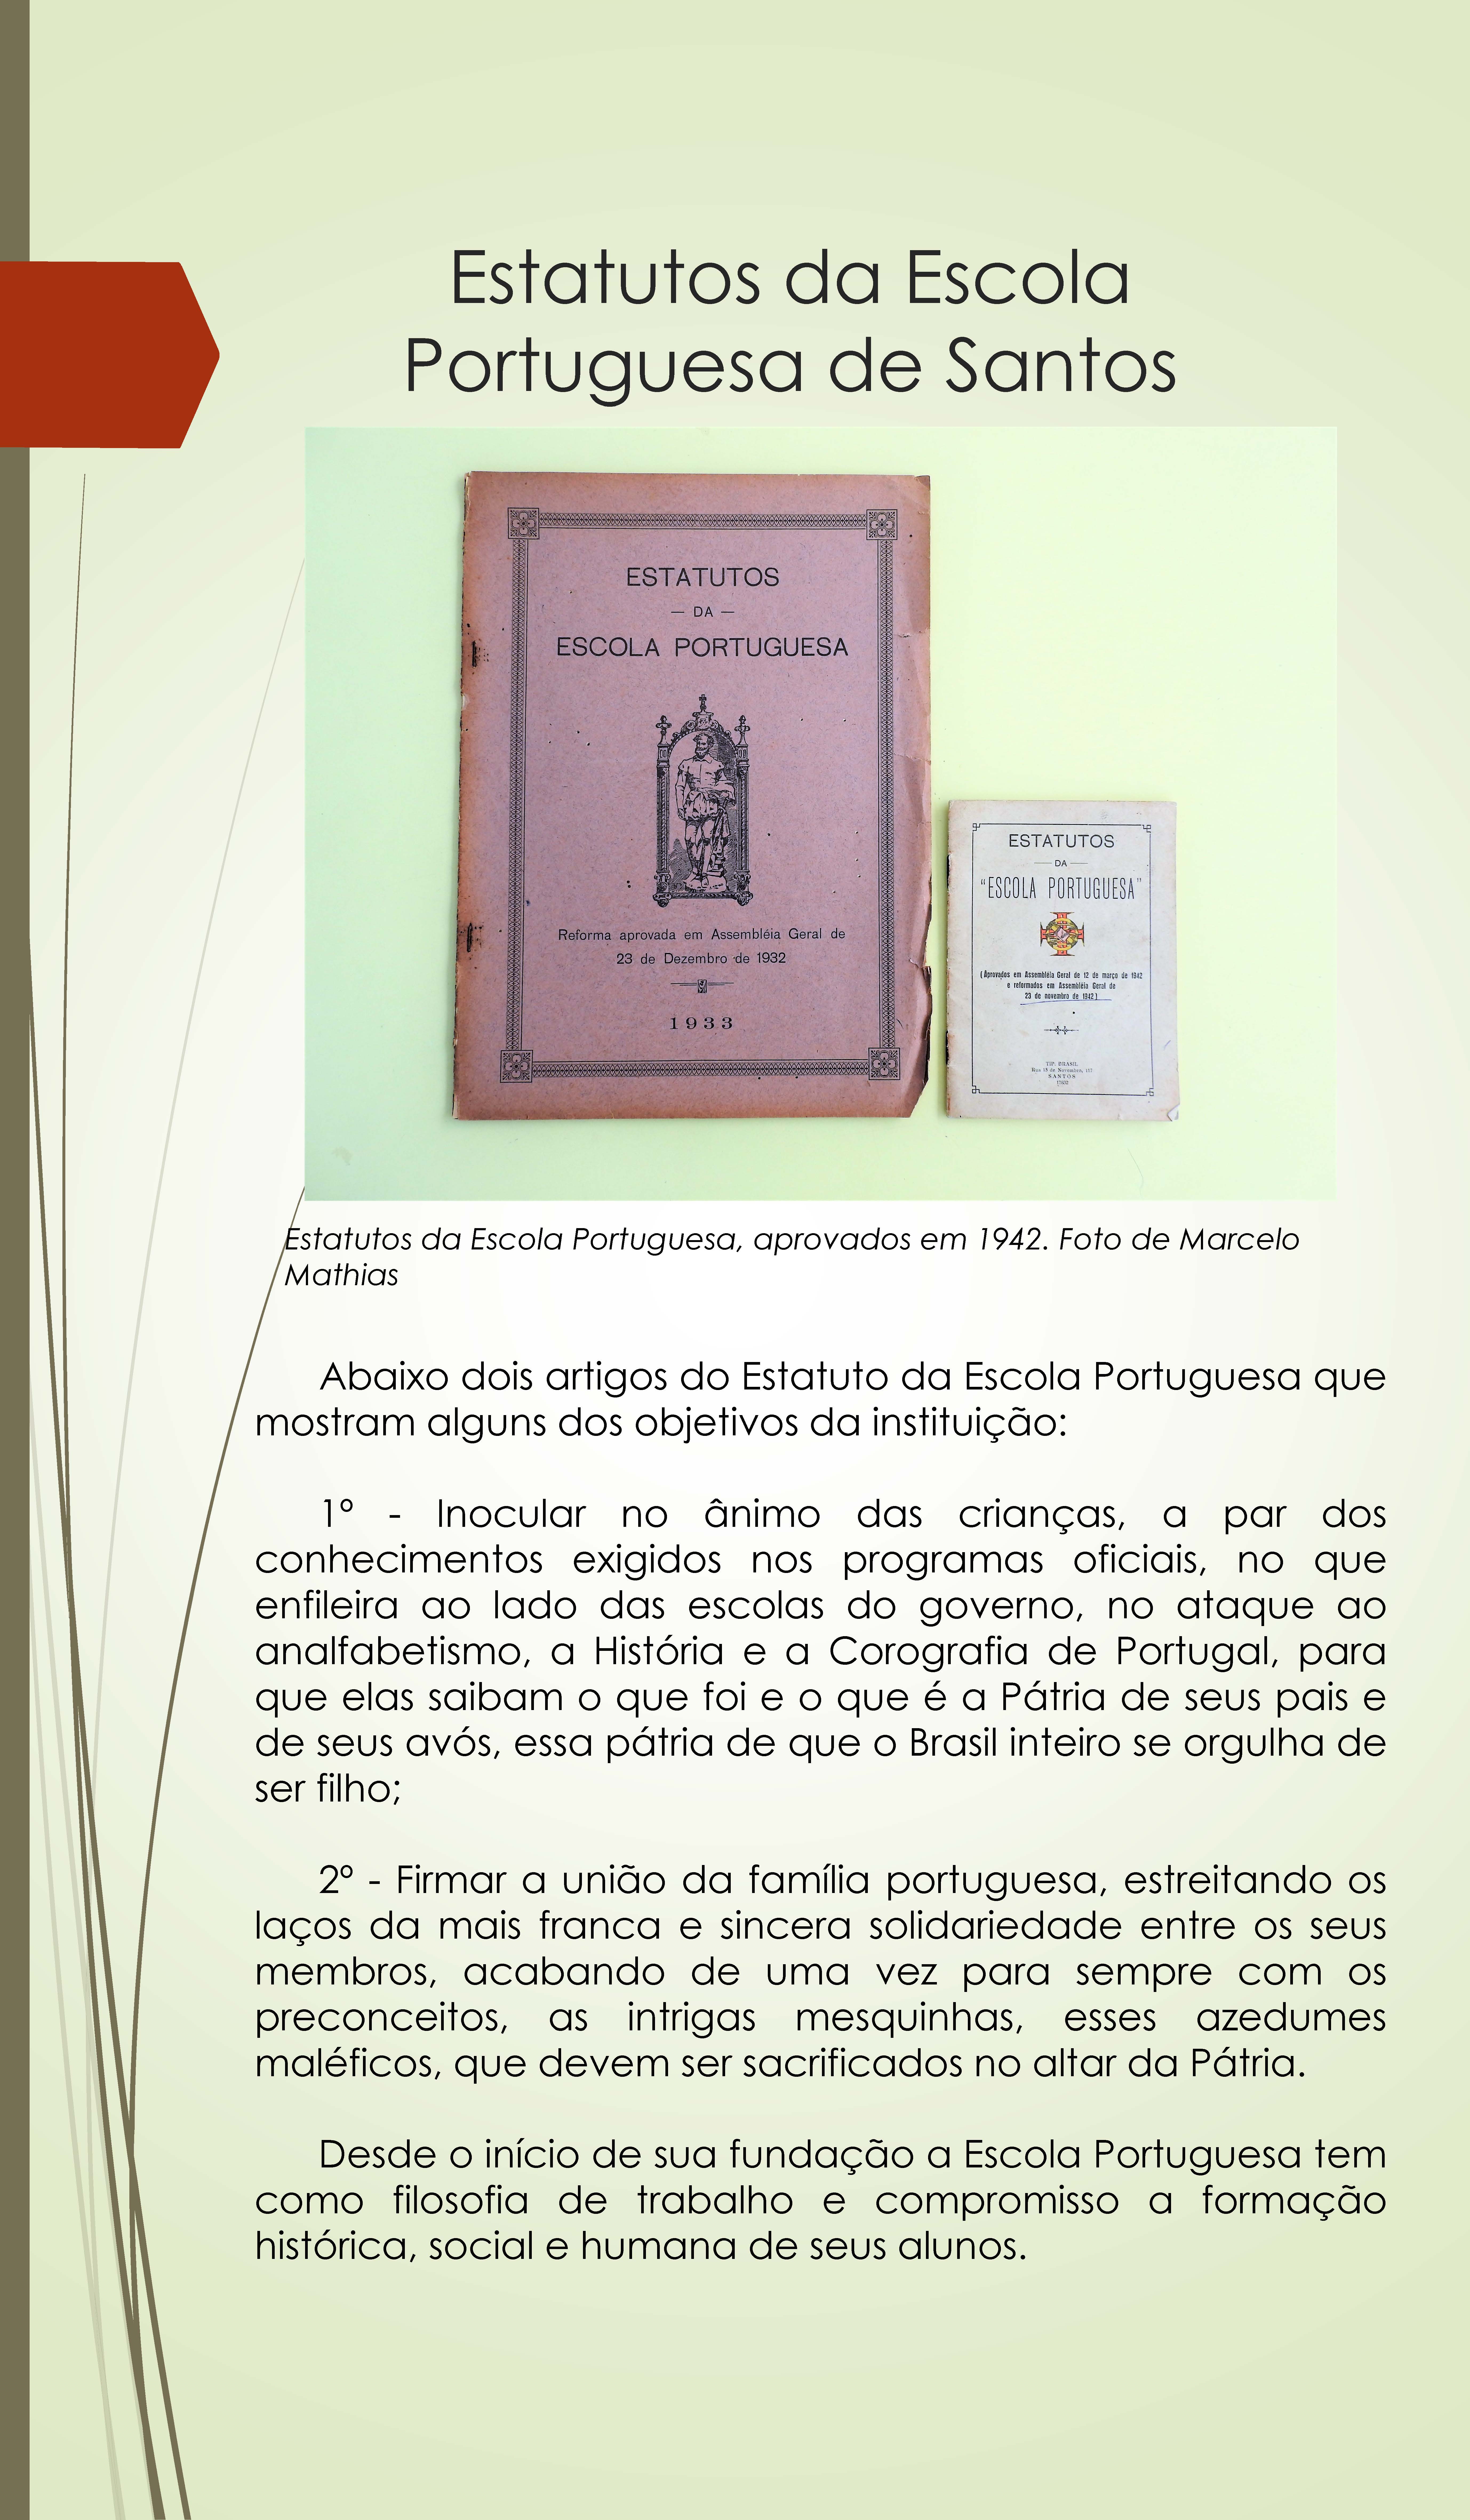 expo_escola_portugesa_100_anos_pdf_pgina_05.jpg